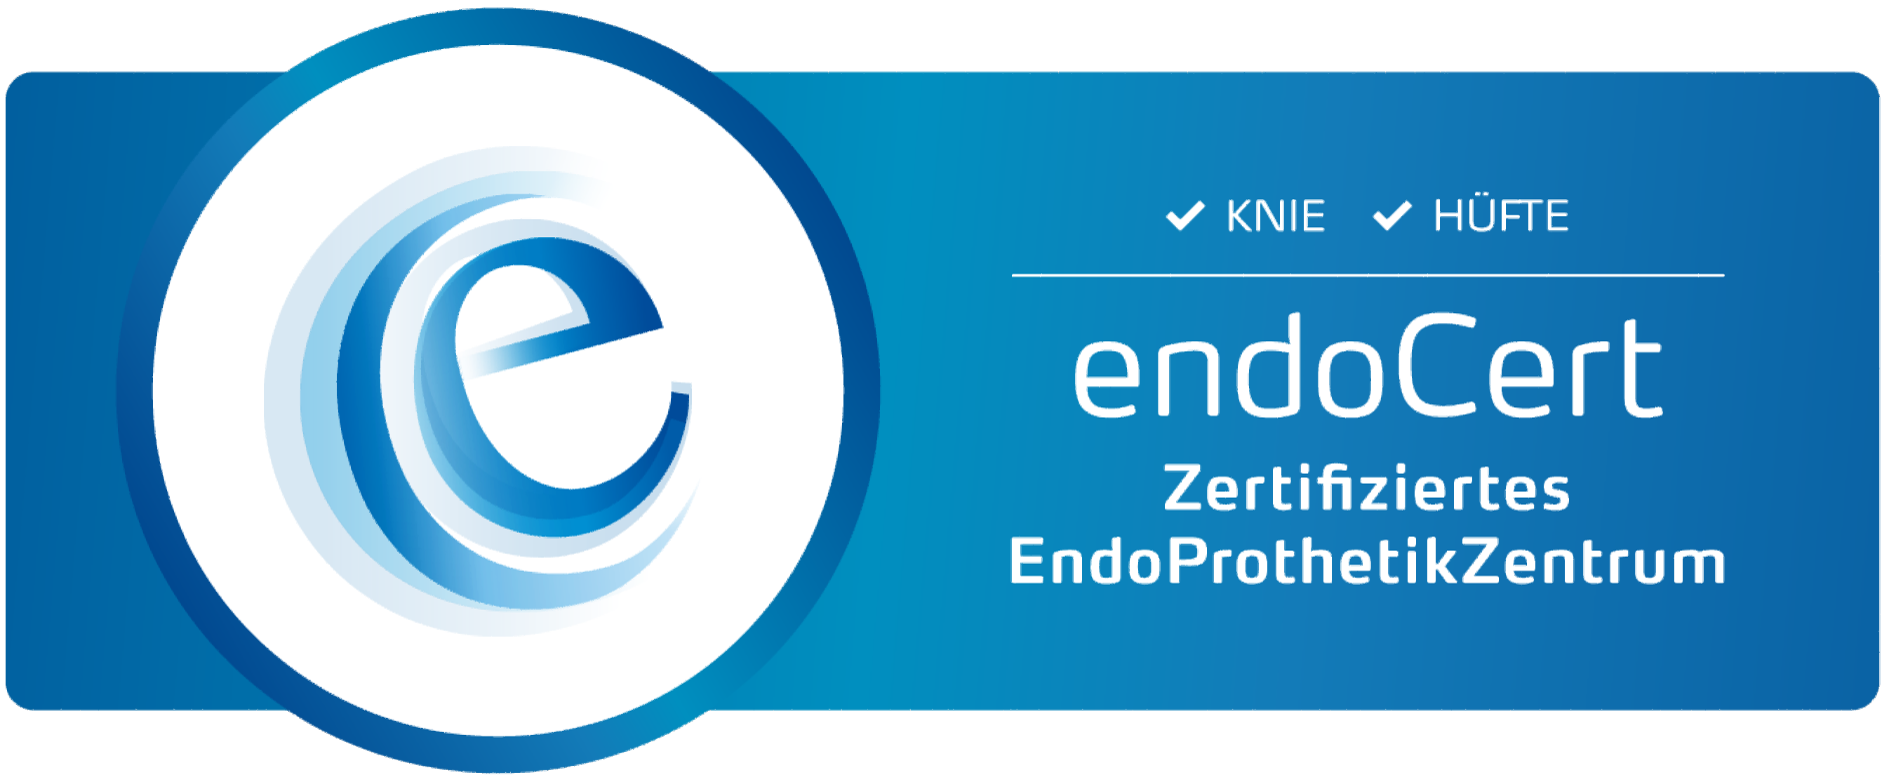 Zertifizierte EndoProthetikZentrum